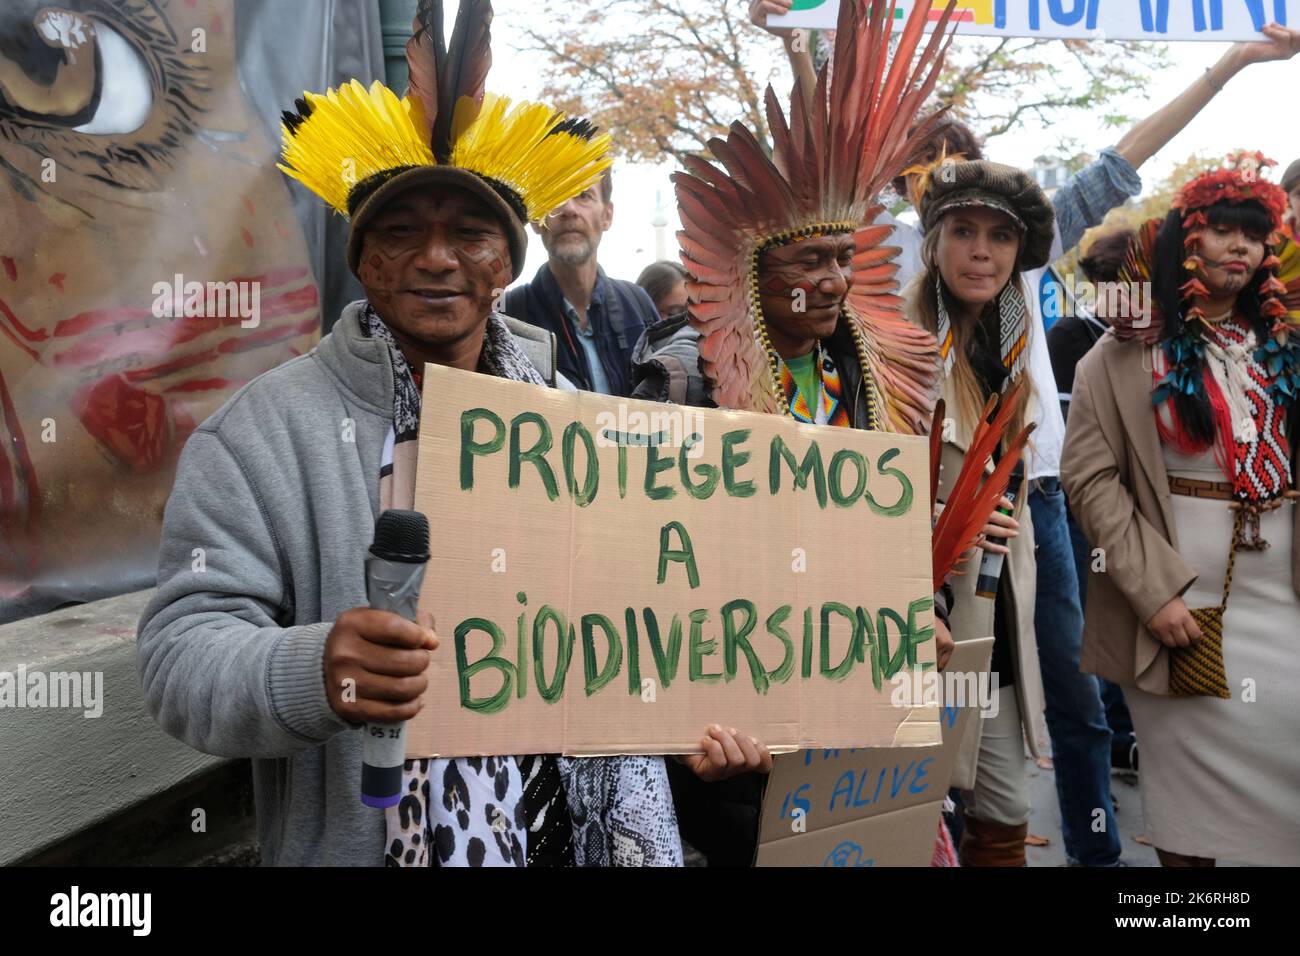 Une marche pour l'amazonie avec 6 présentoirs indignes d'Amazonie et de la forêt Atlantique contre la déforestation et l'orpaillage illégal Banque D'Images